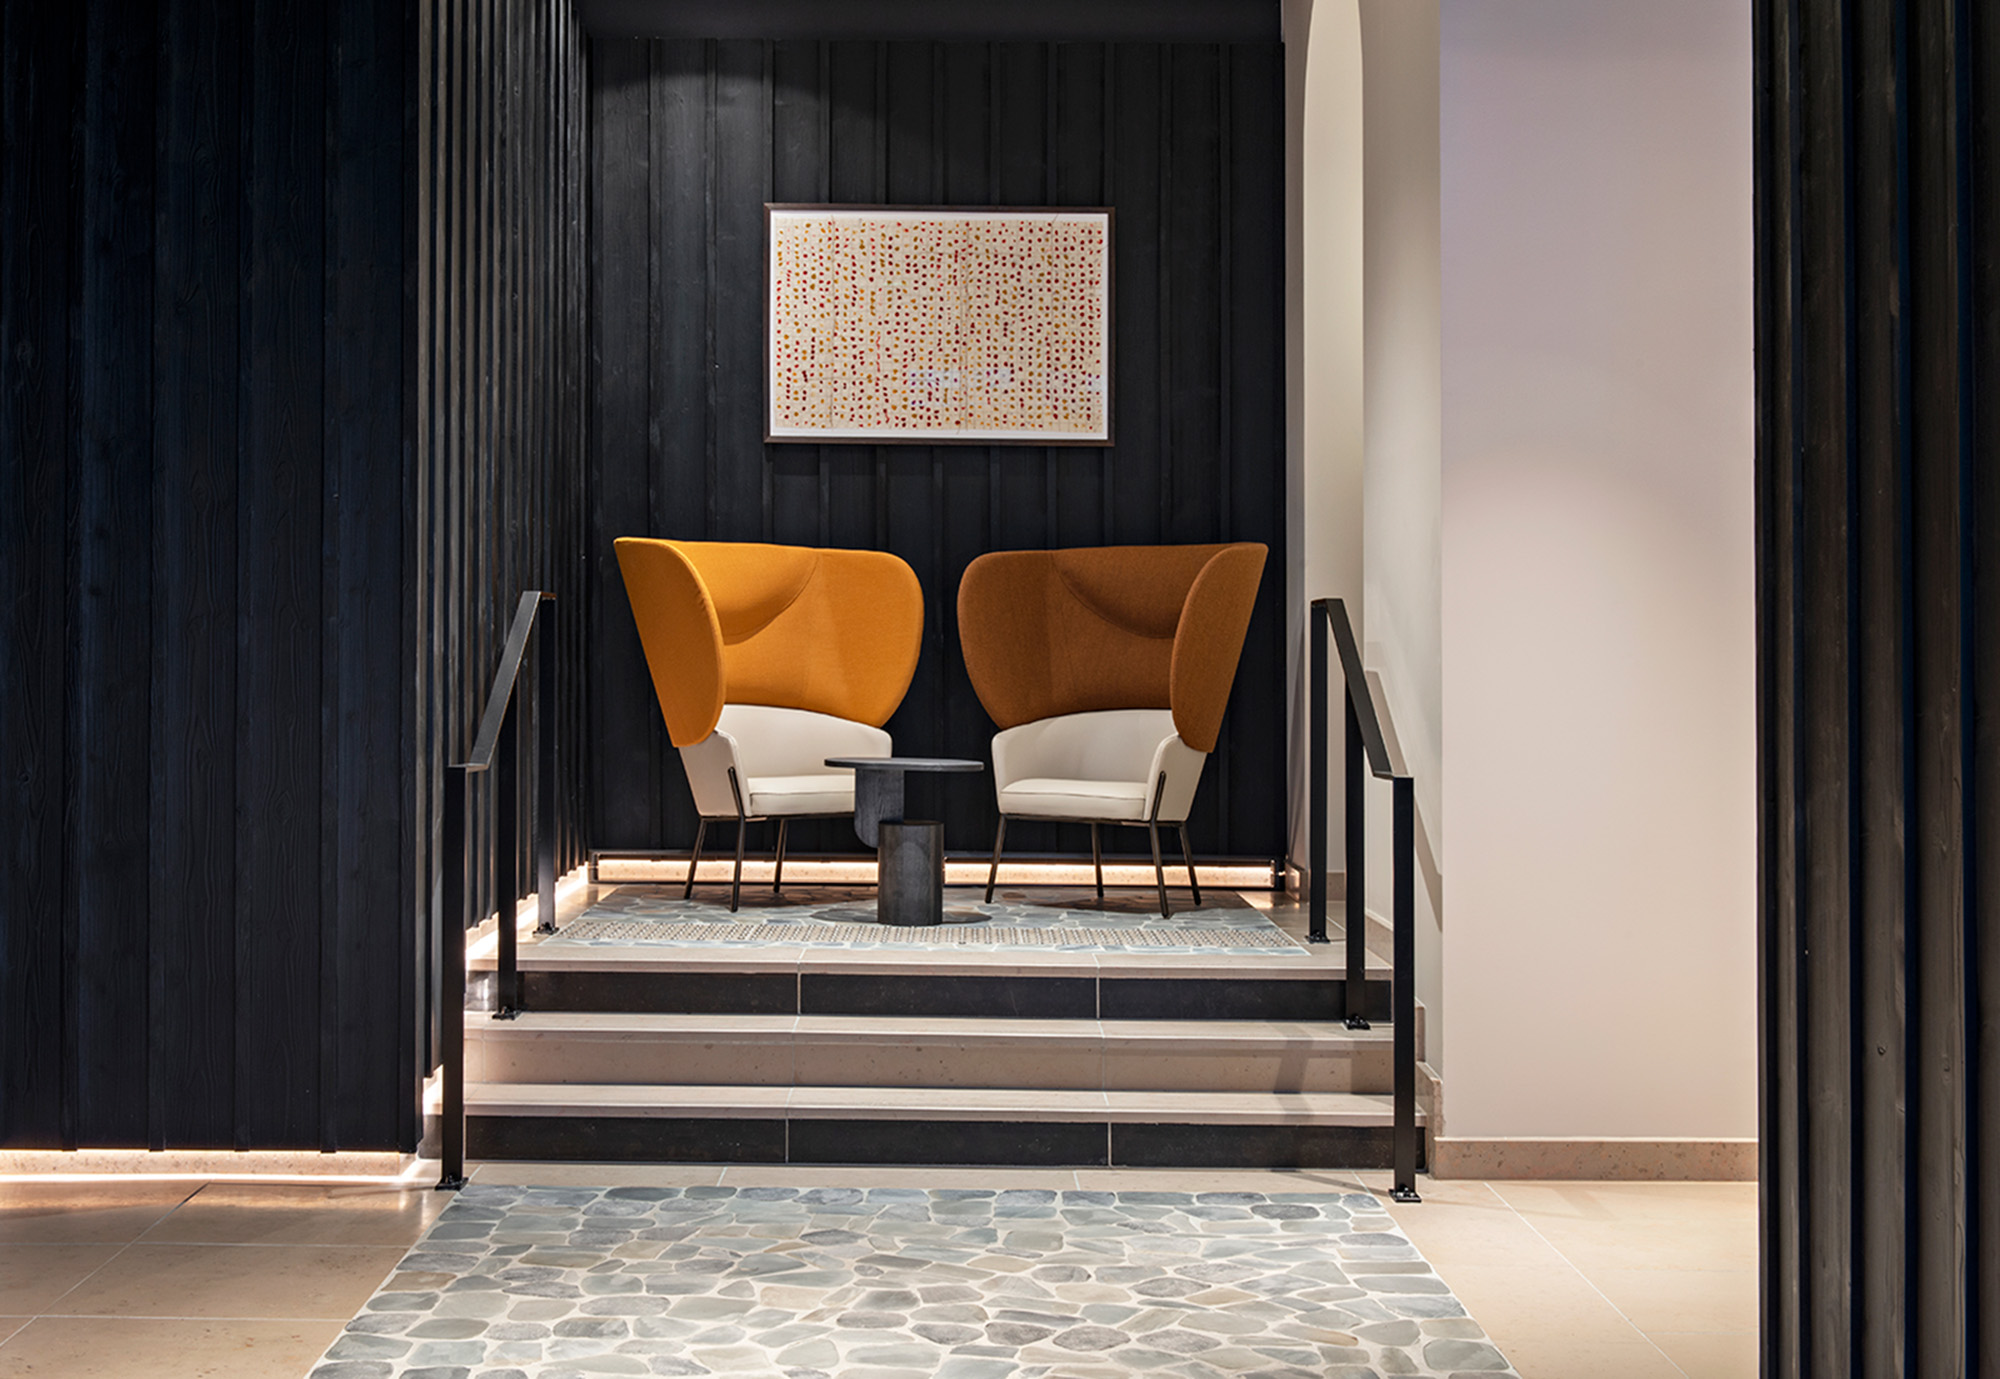 Niche privée dans le lobby de l'hôtel leonor strasbourg, france, hotel lifestyle de luxe désigné par le studio d'architecture d'intérieur jean-philippe nuel, rénovation, réhabilitation, décoration d'intérieur, hôtel 4 étoiles